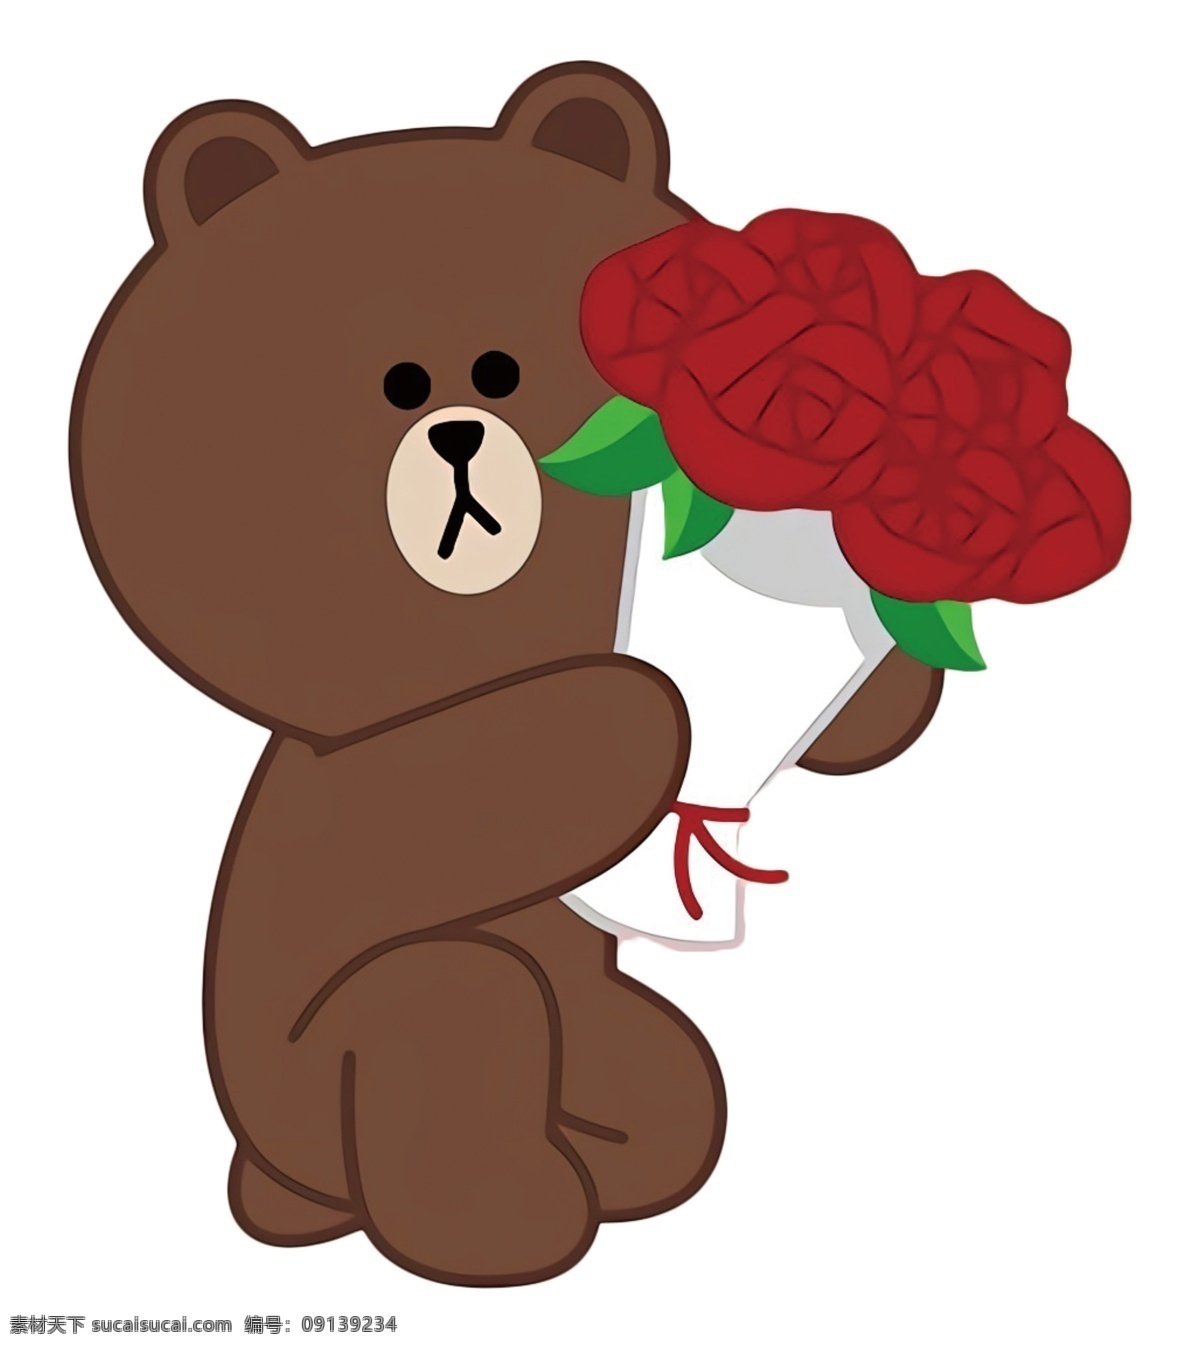 布朗熊 献花 七夕 情人节 可爱 清晰 卡通设计